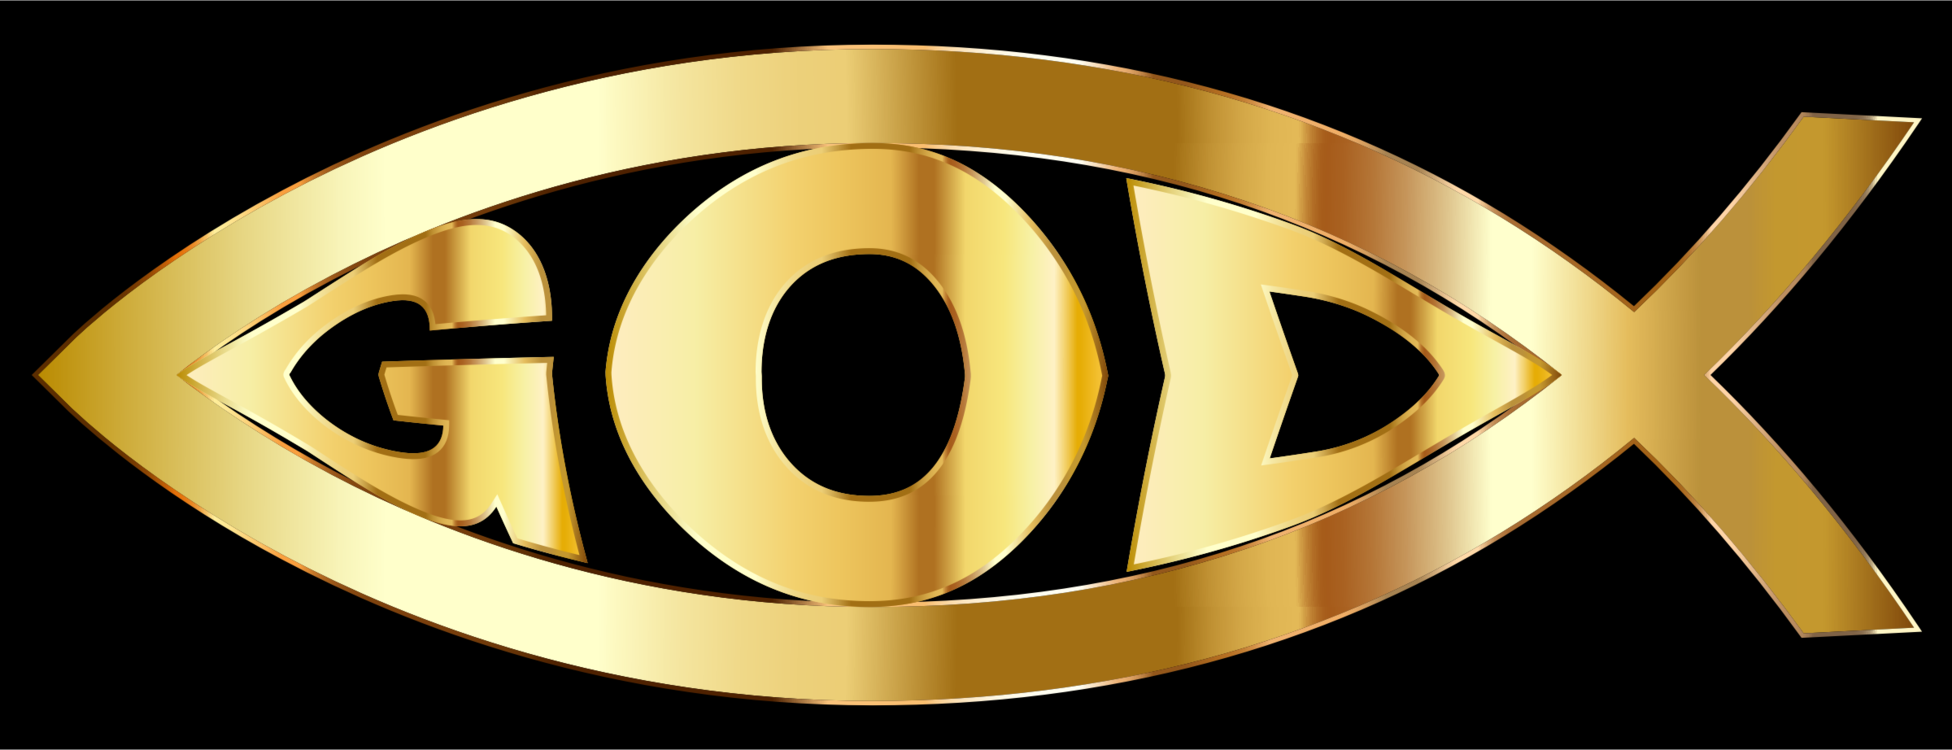 Emblem,Gold,Symbol